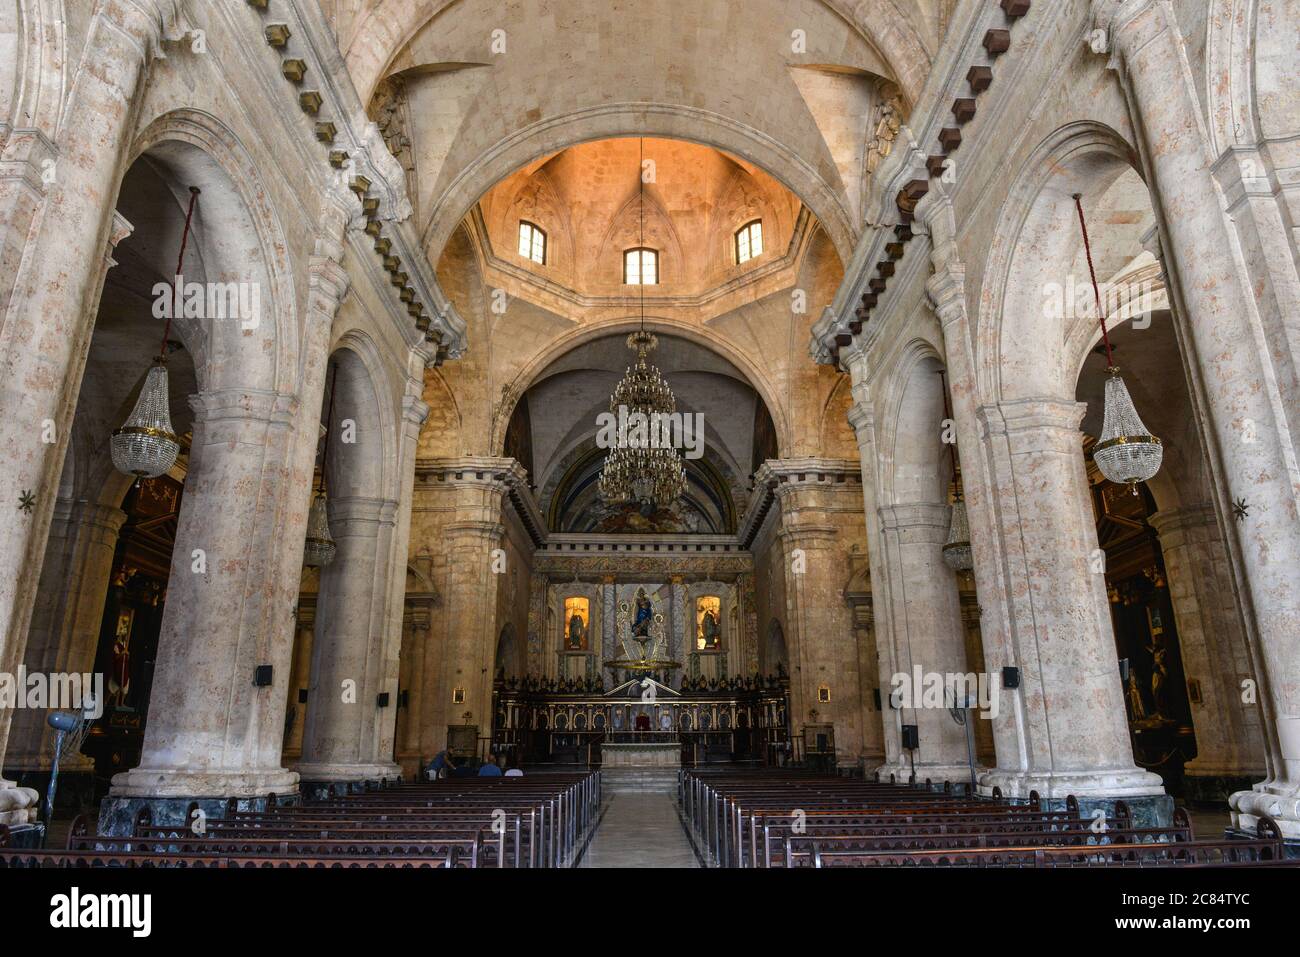 Cuba, la cathédrale de la Havane : édifice religieux de style baroque datant du XVIIIe siècle et dédié à la Vierge Marie, situé dans la cathédrale Squ Banque D'Images